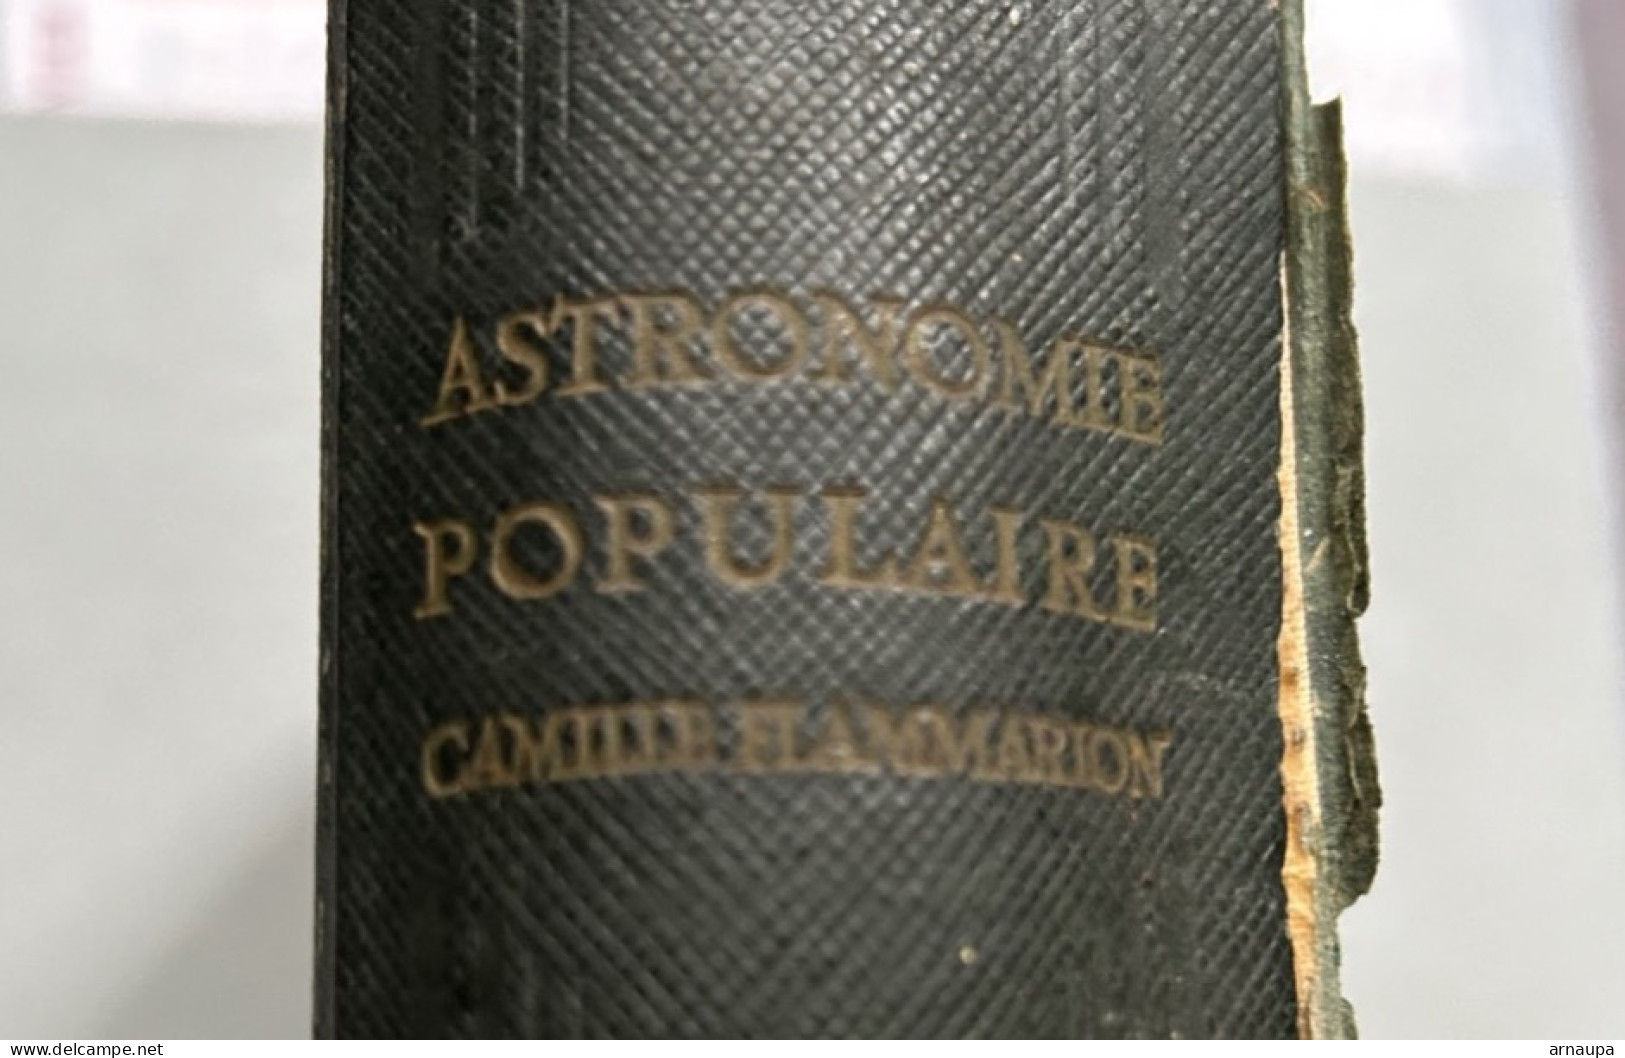 Astronomie Populaire Camille Flammarion 1953 - Enciclopedie